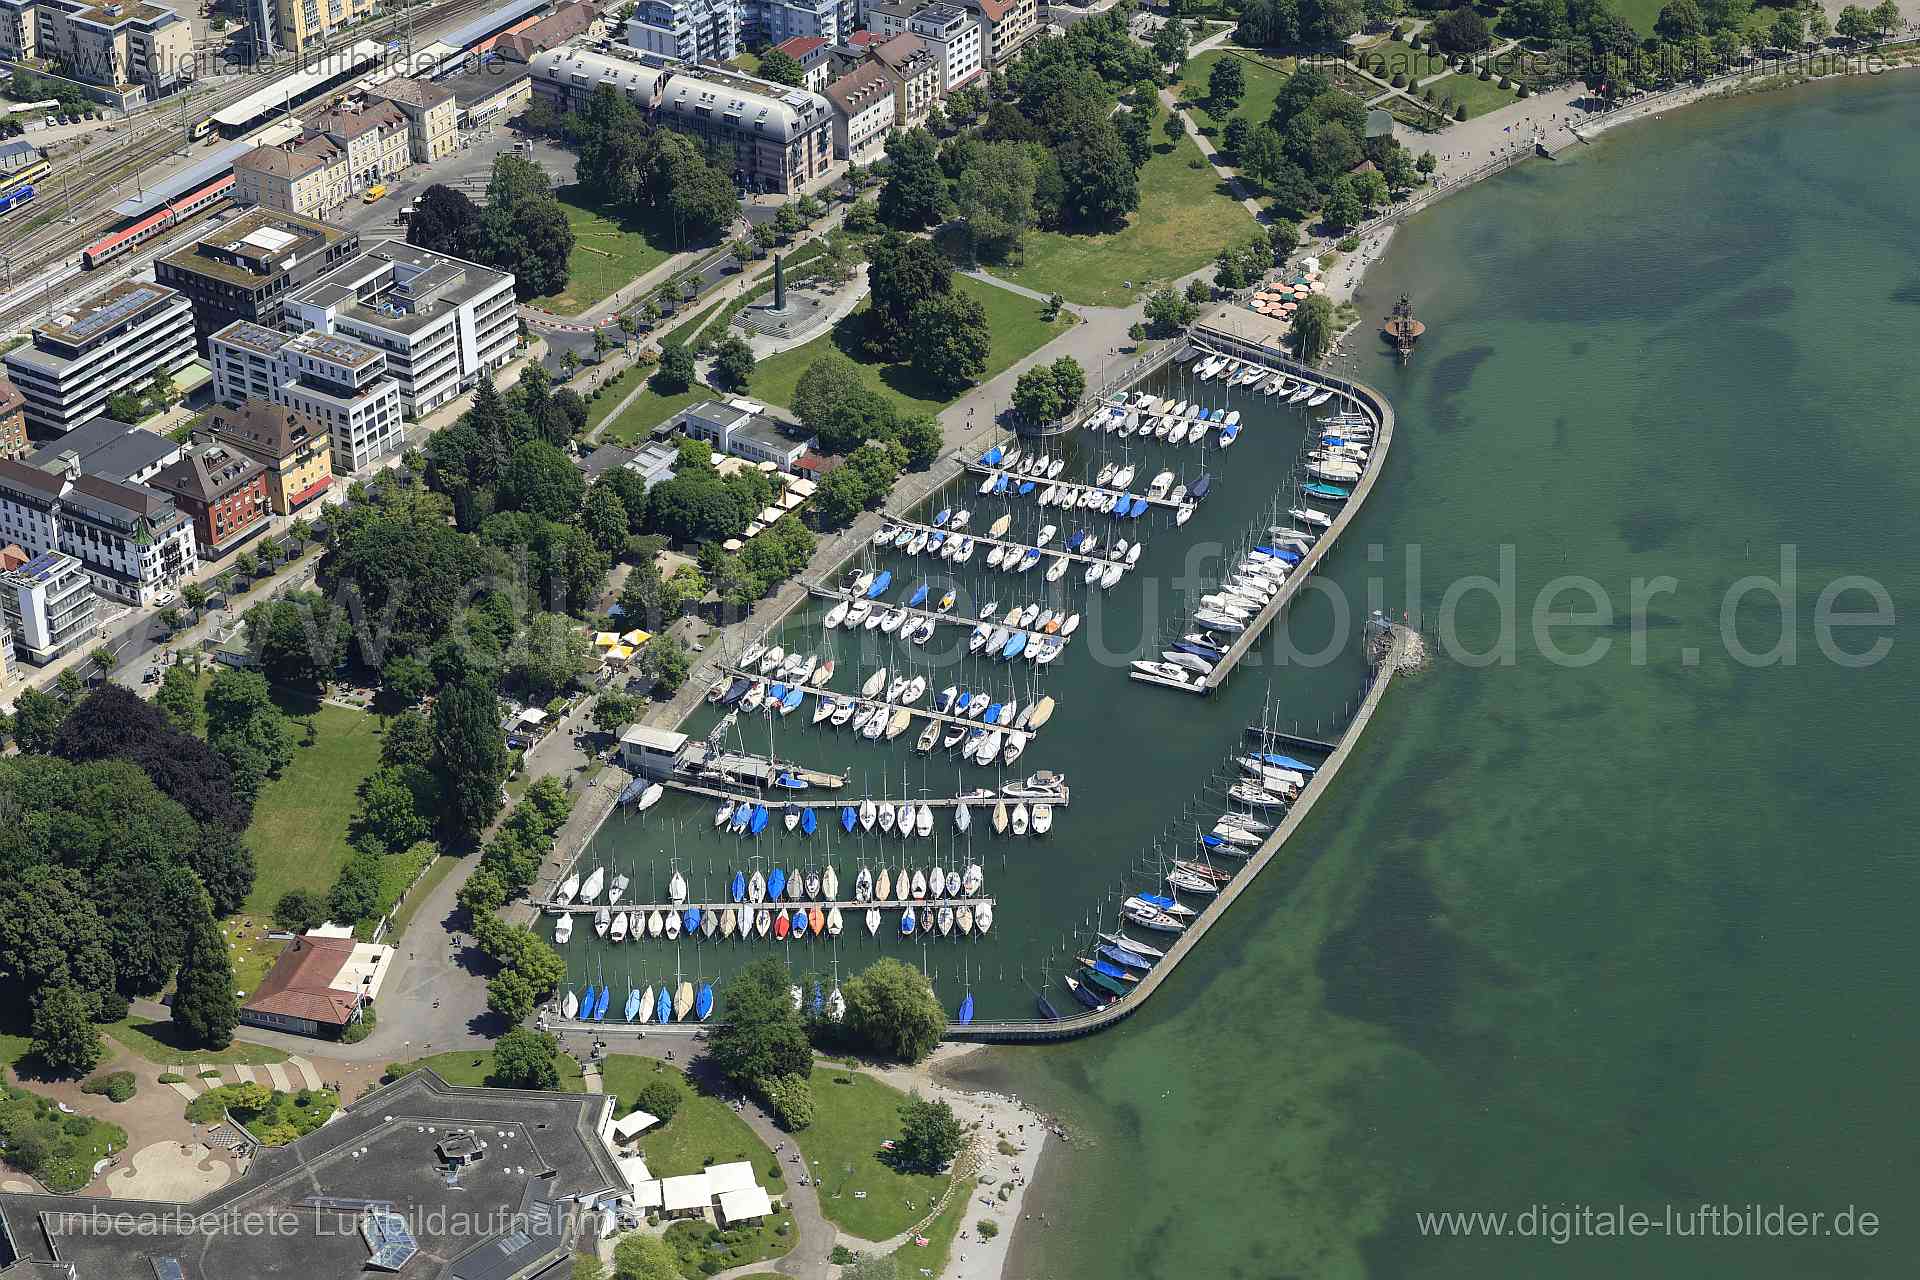 Luftbild - Friedrichshafen, Ort: Friedrichshafen, Tags: Steg, Boote, Hafen, Bodensee, ...